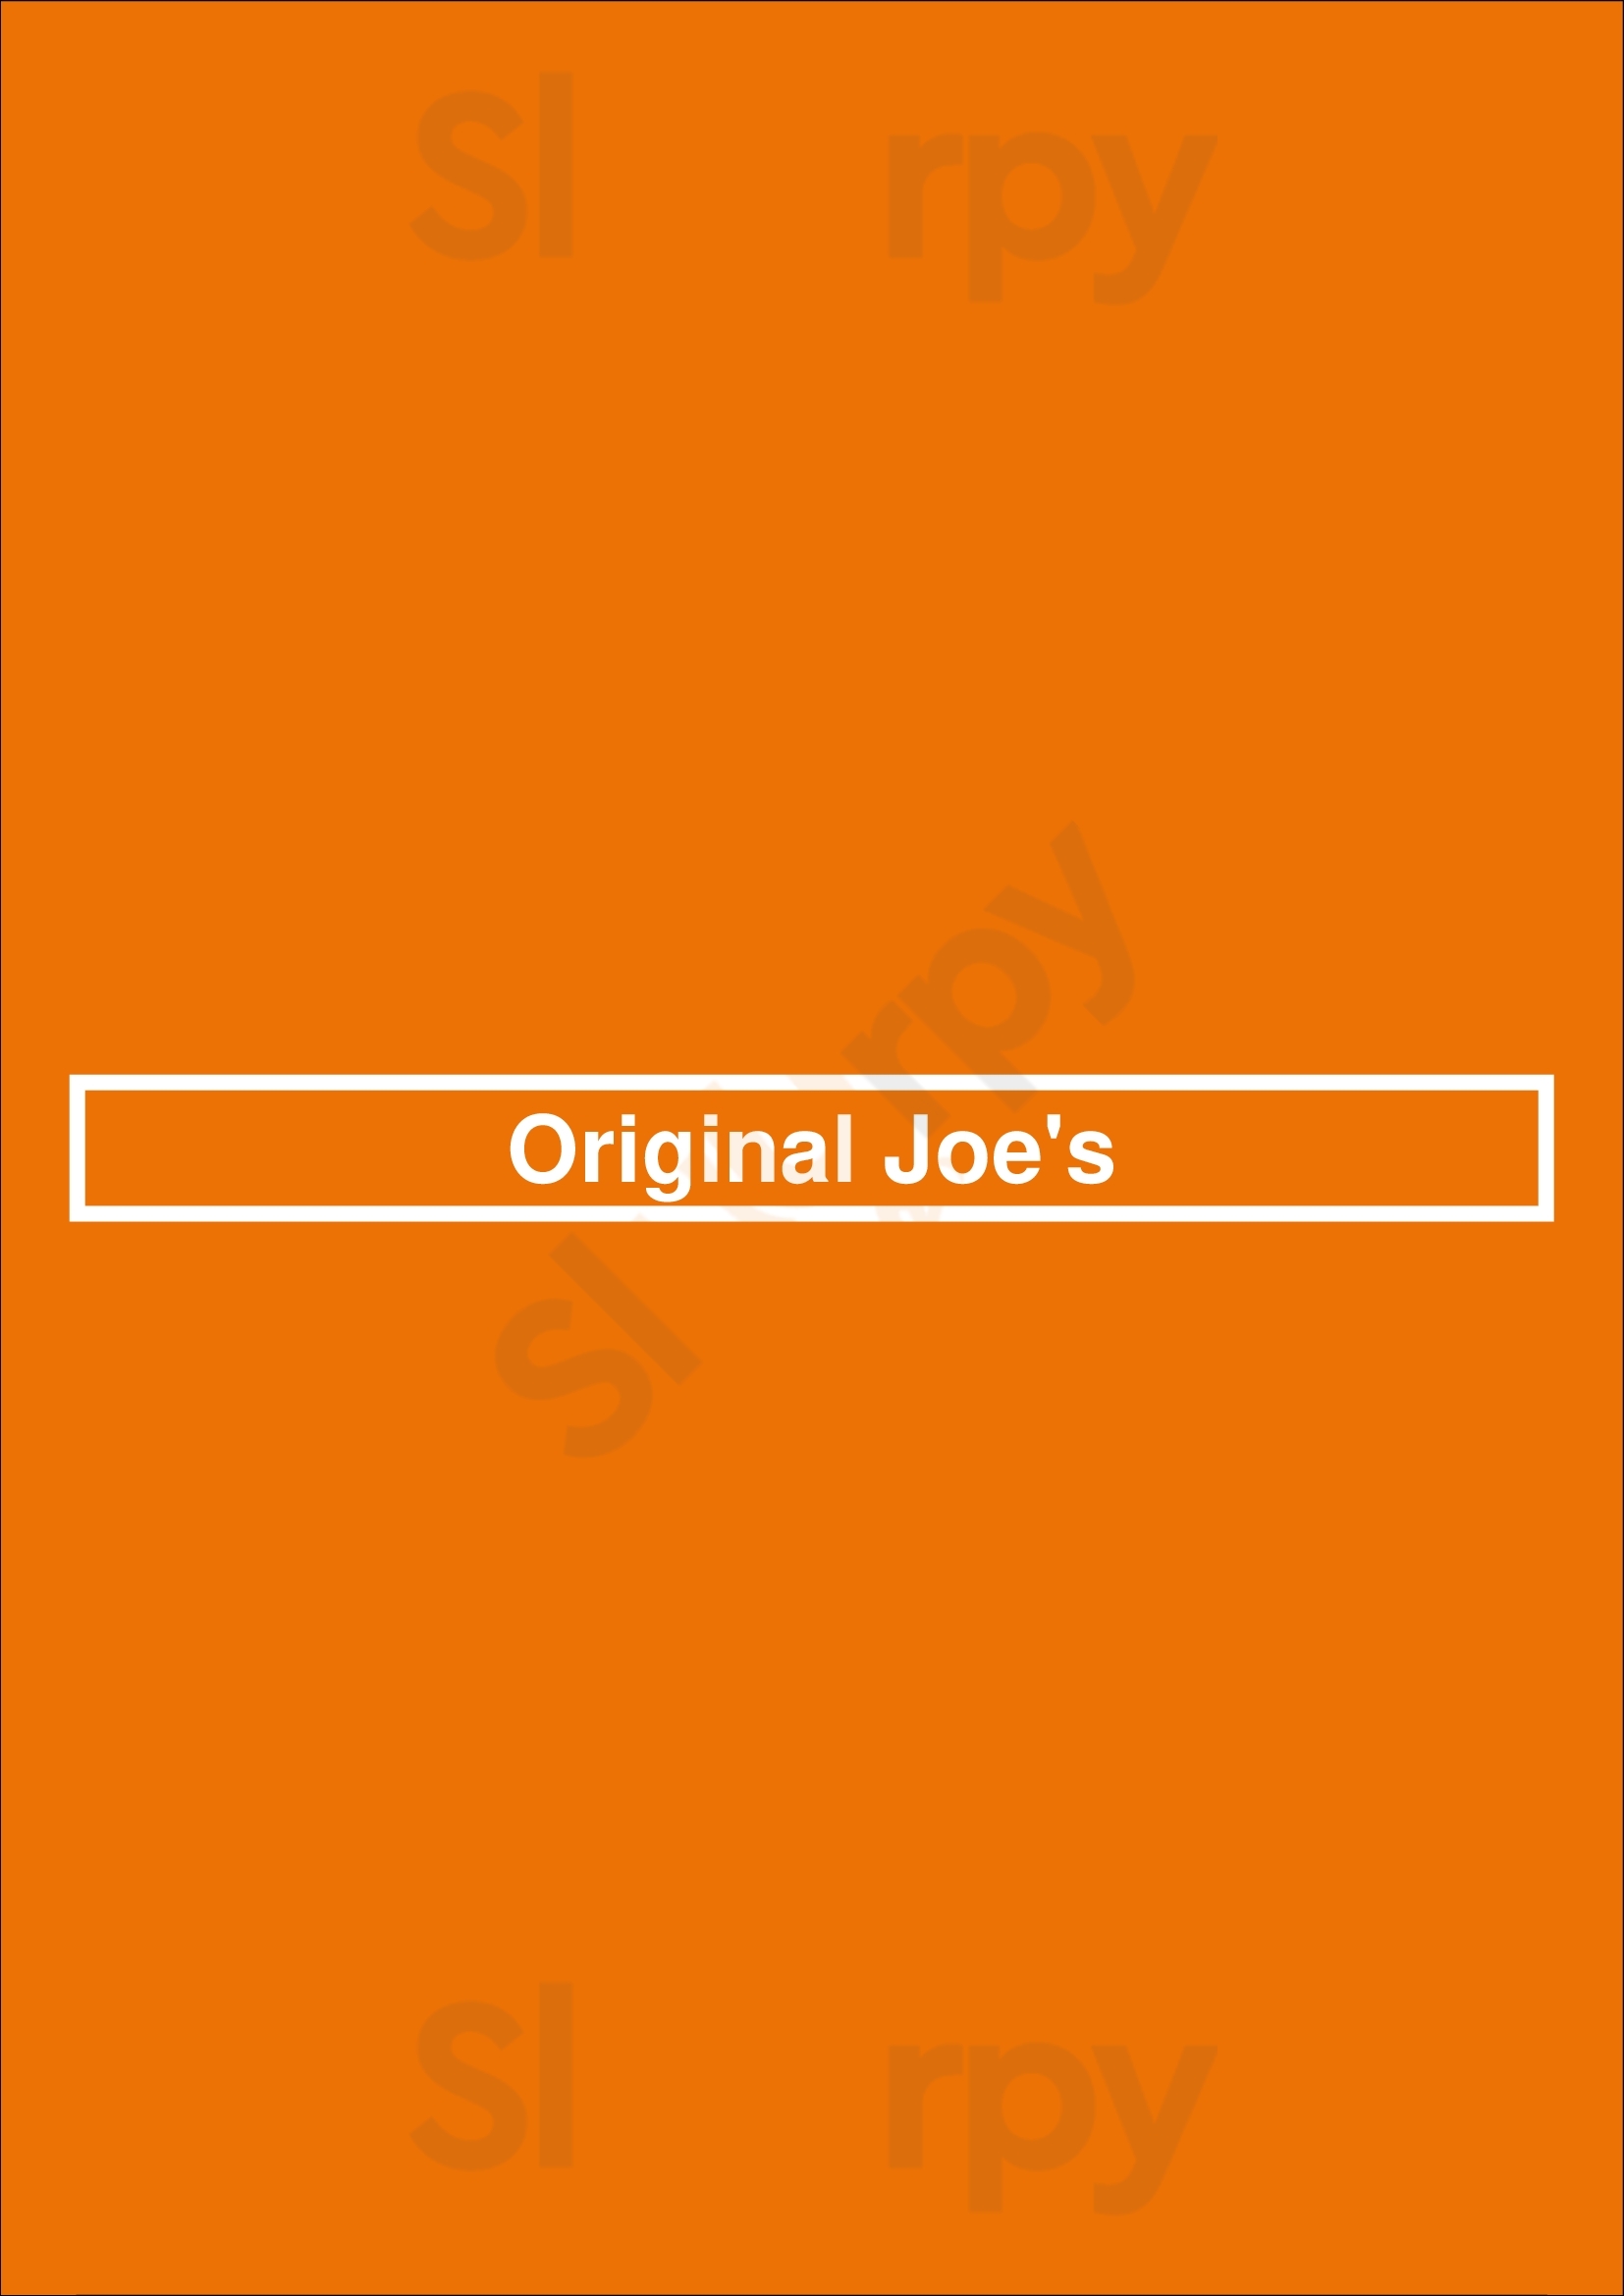 Original Joe's Saskatoon Menu - 1